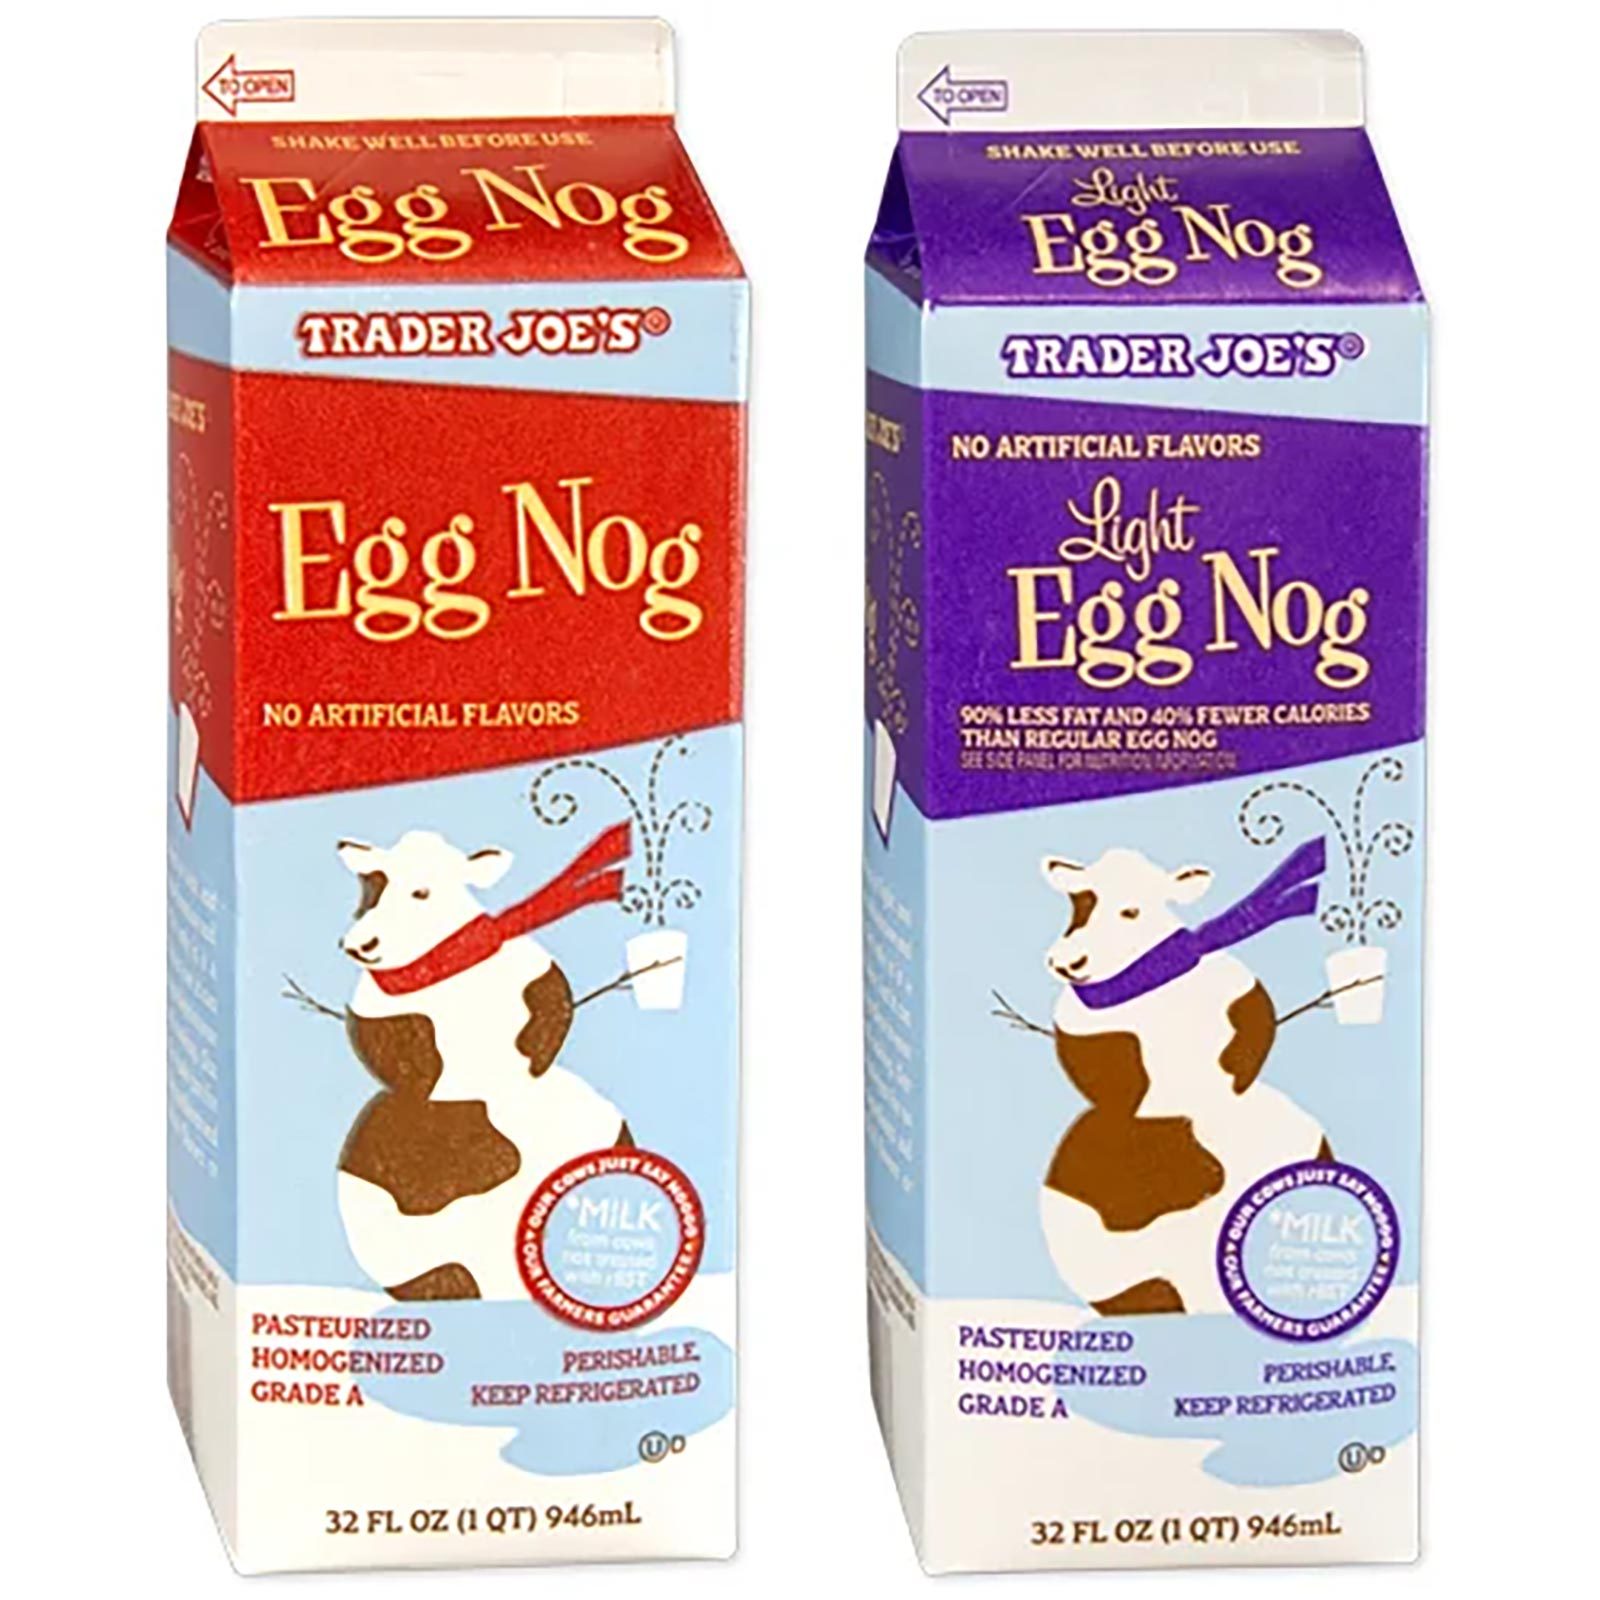 Regular And Light Egg Nog Cartons, Side By Side